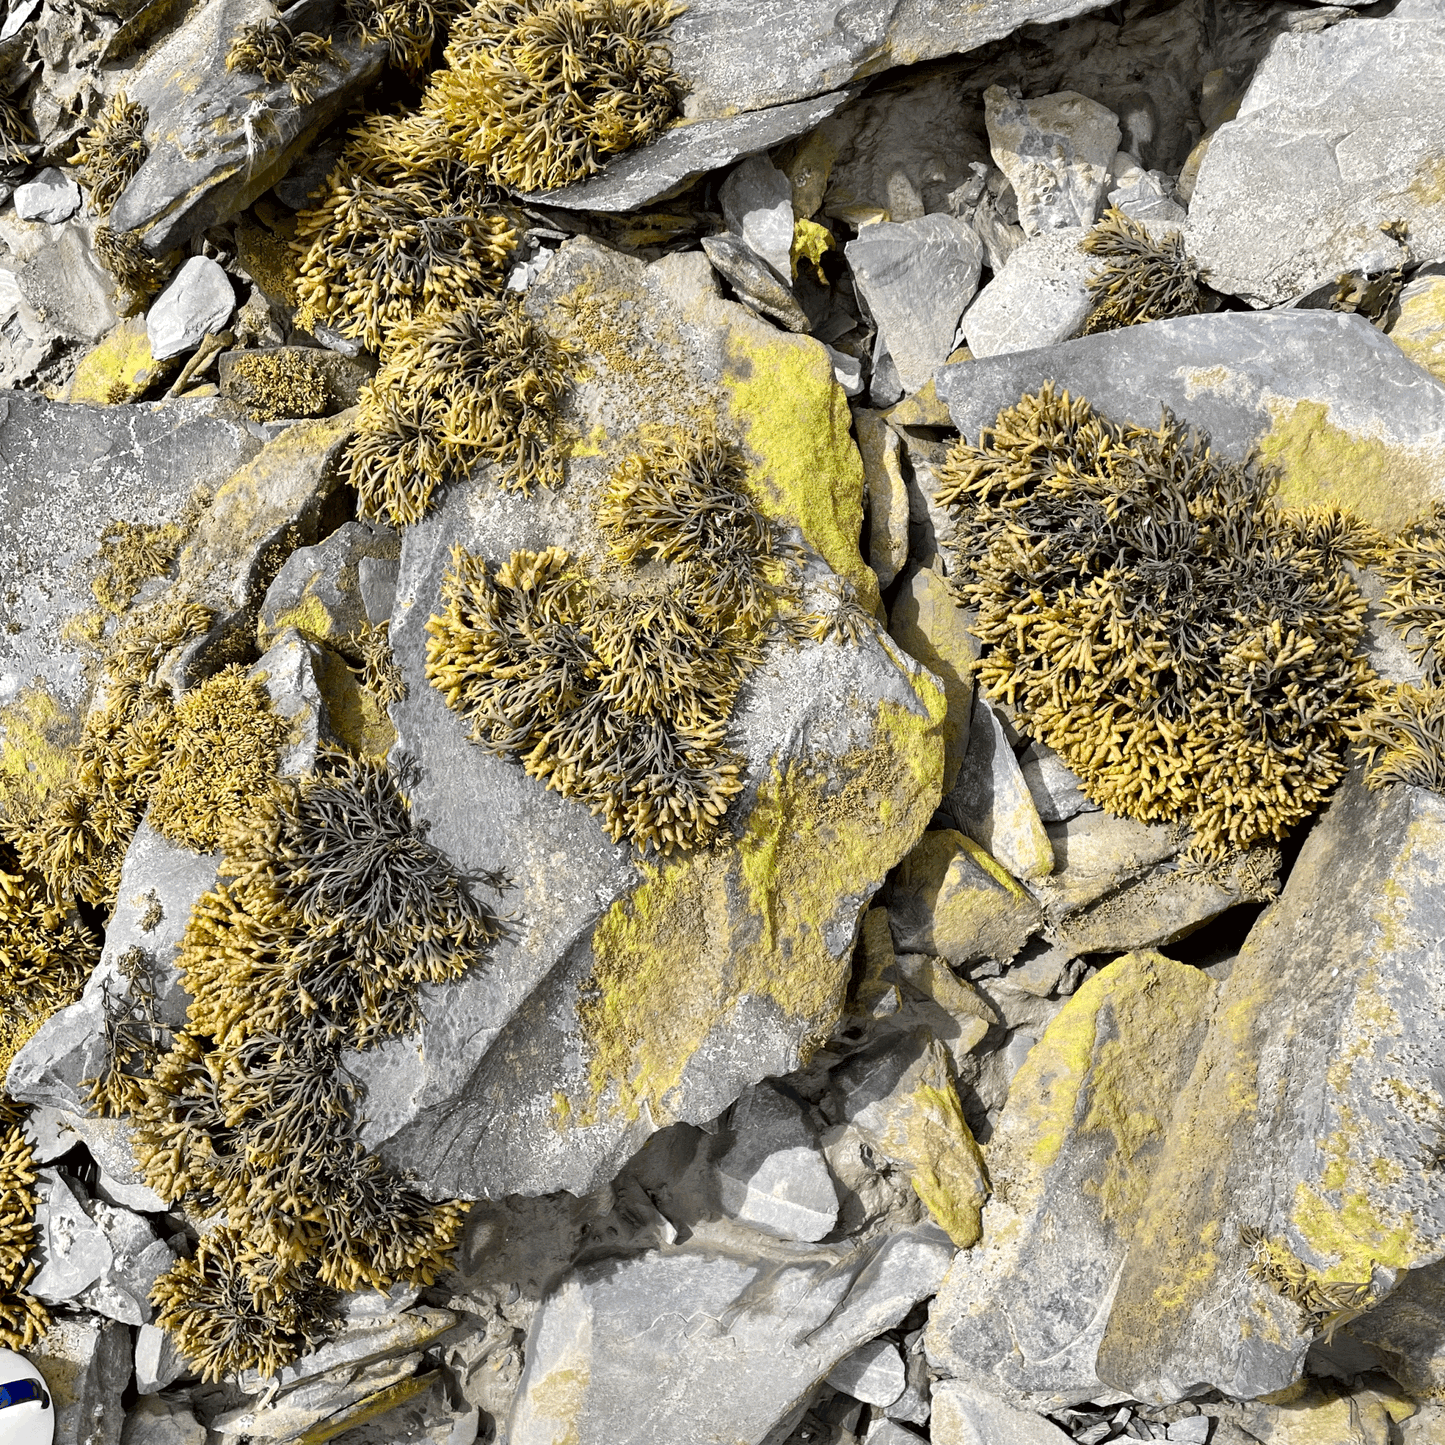 Lichen on rocks at the shore.